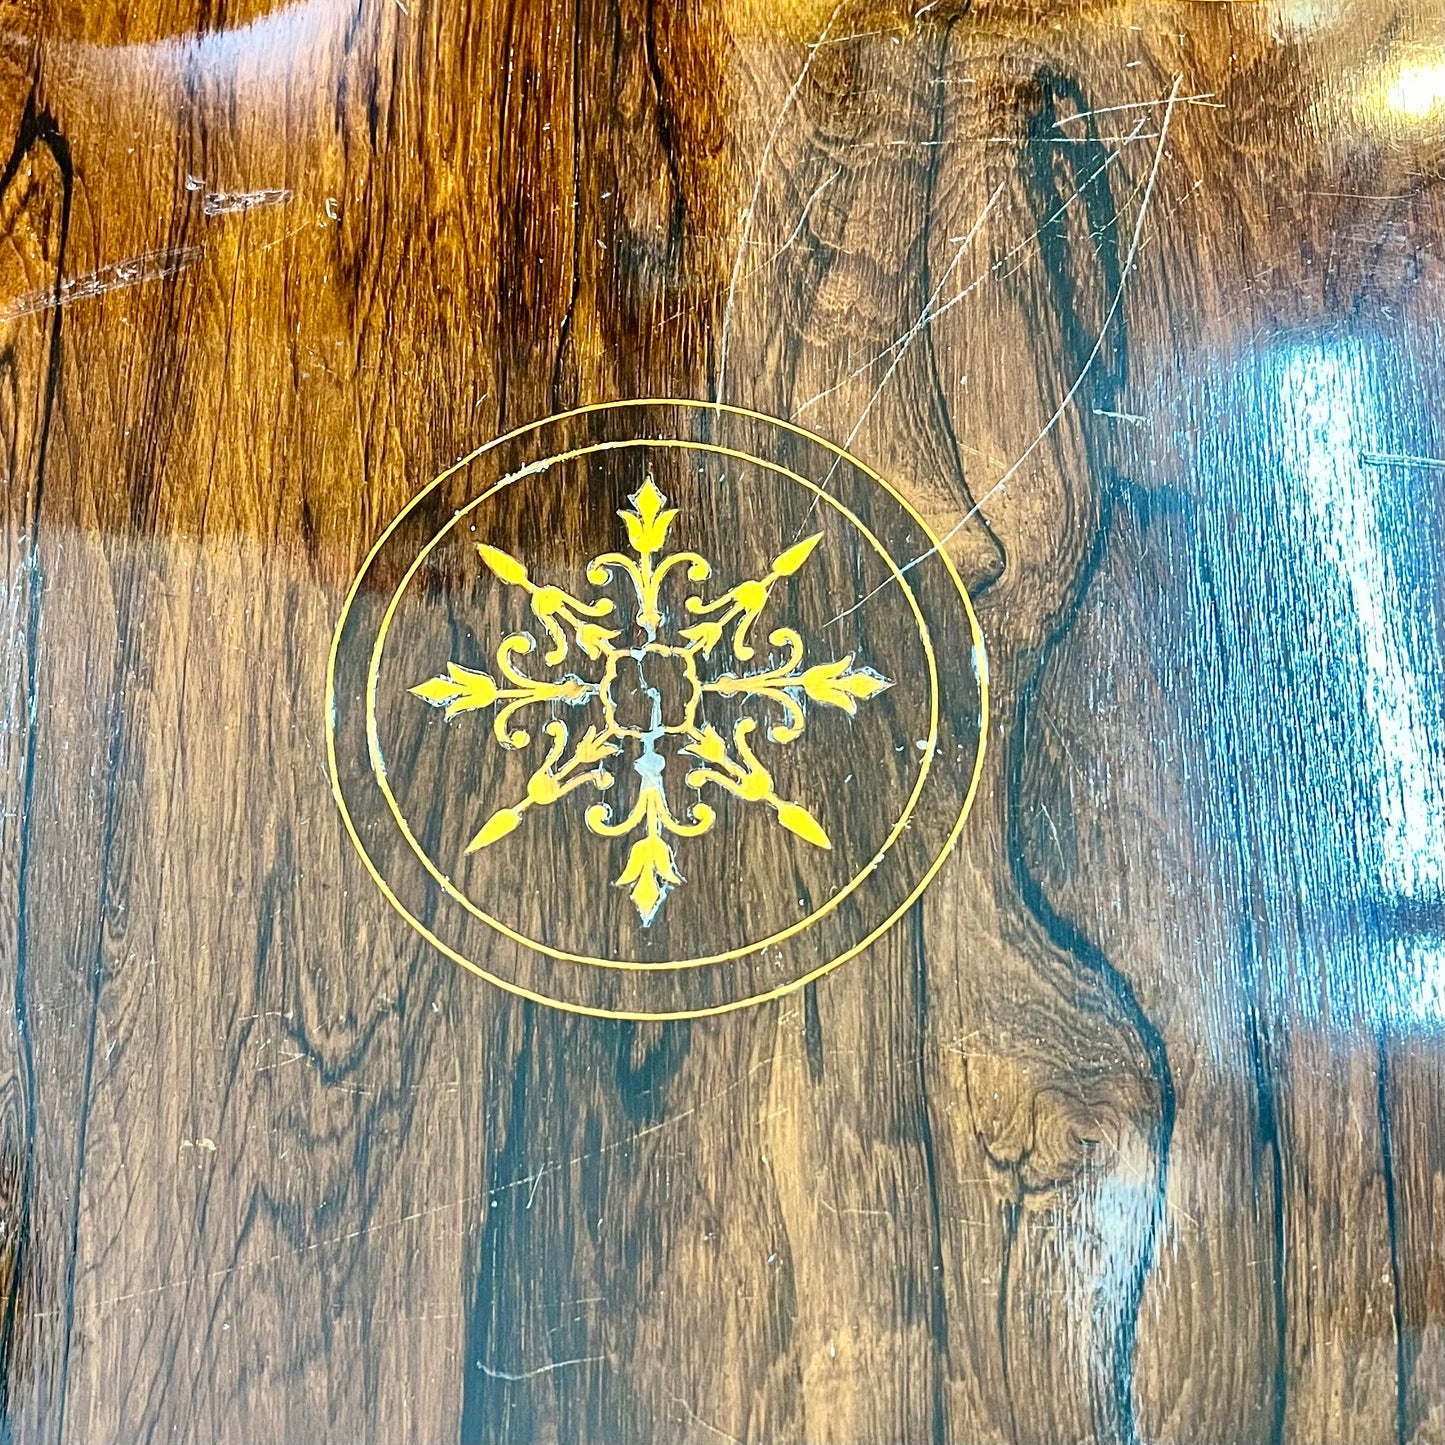 带镶嵌细工的古董爱德华式玫瑰木边桌